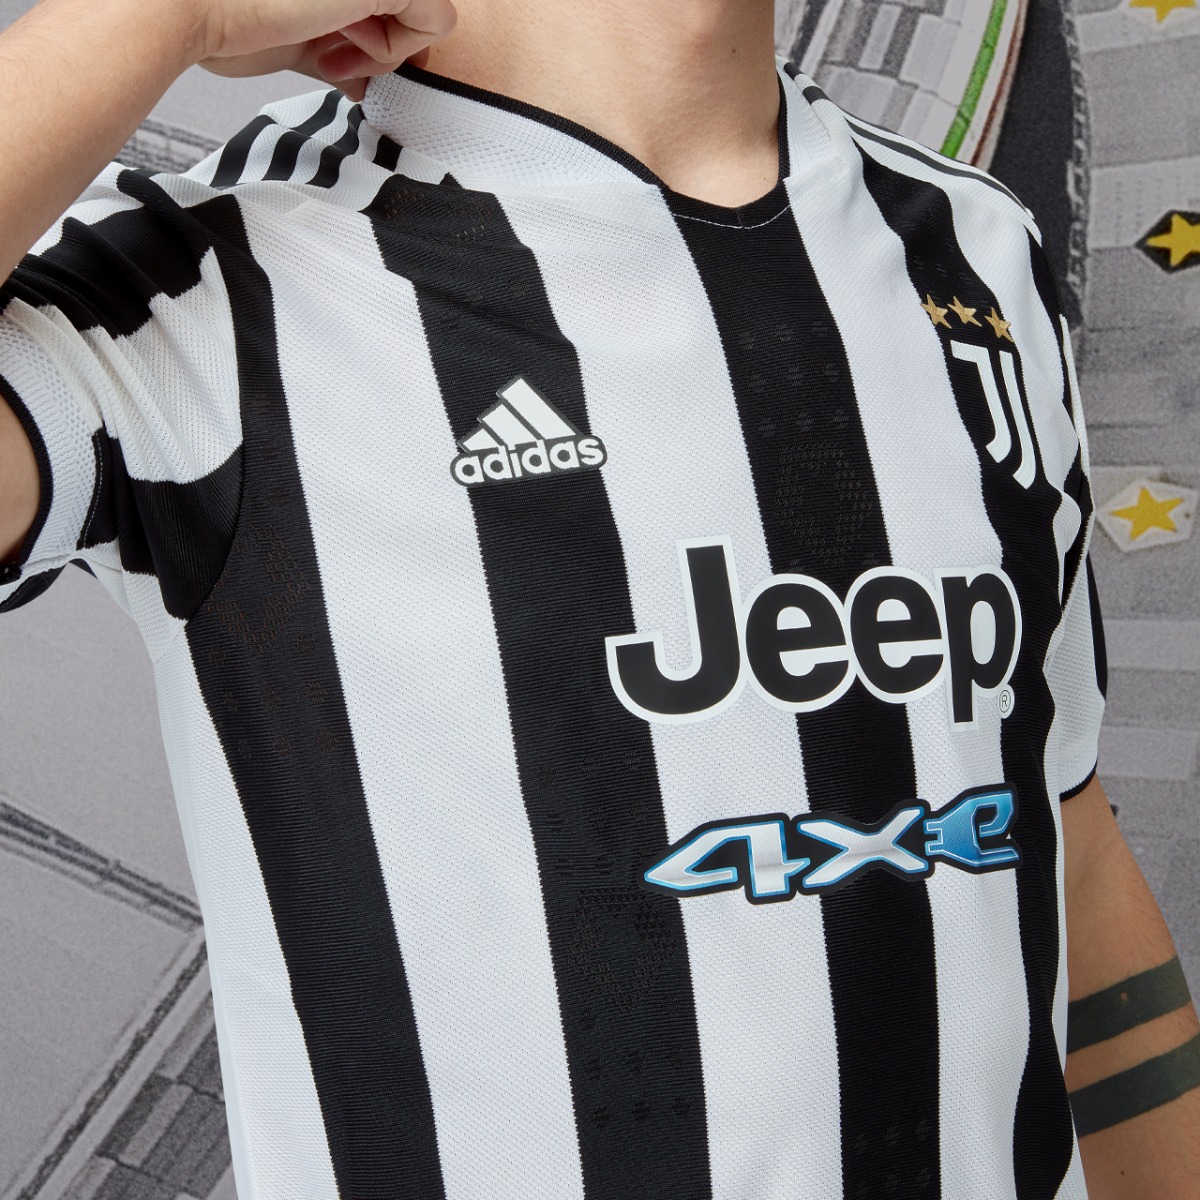 adidas-JuventusHOME-2122-sliderblokjes-640x640-1.jpg